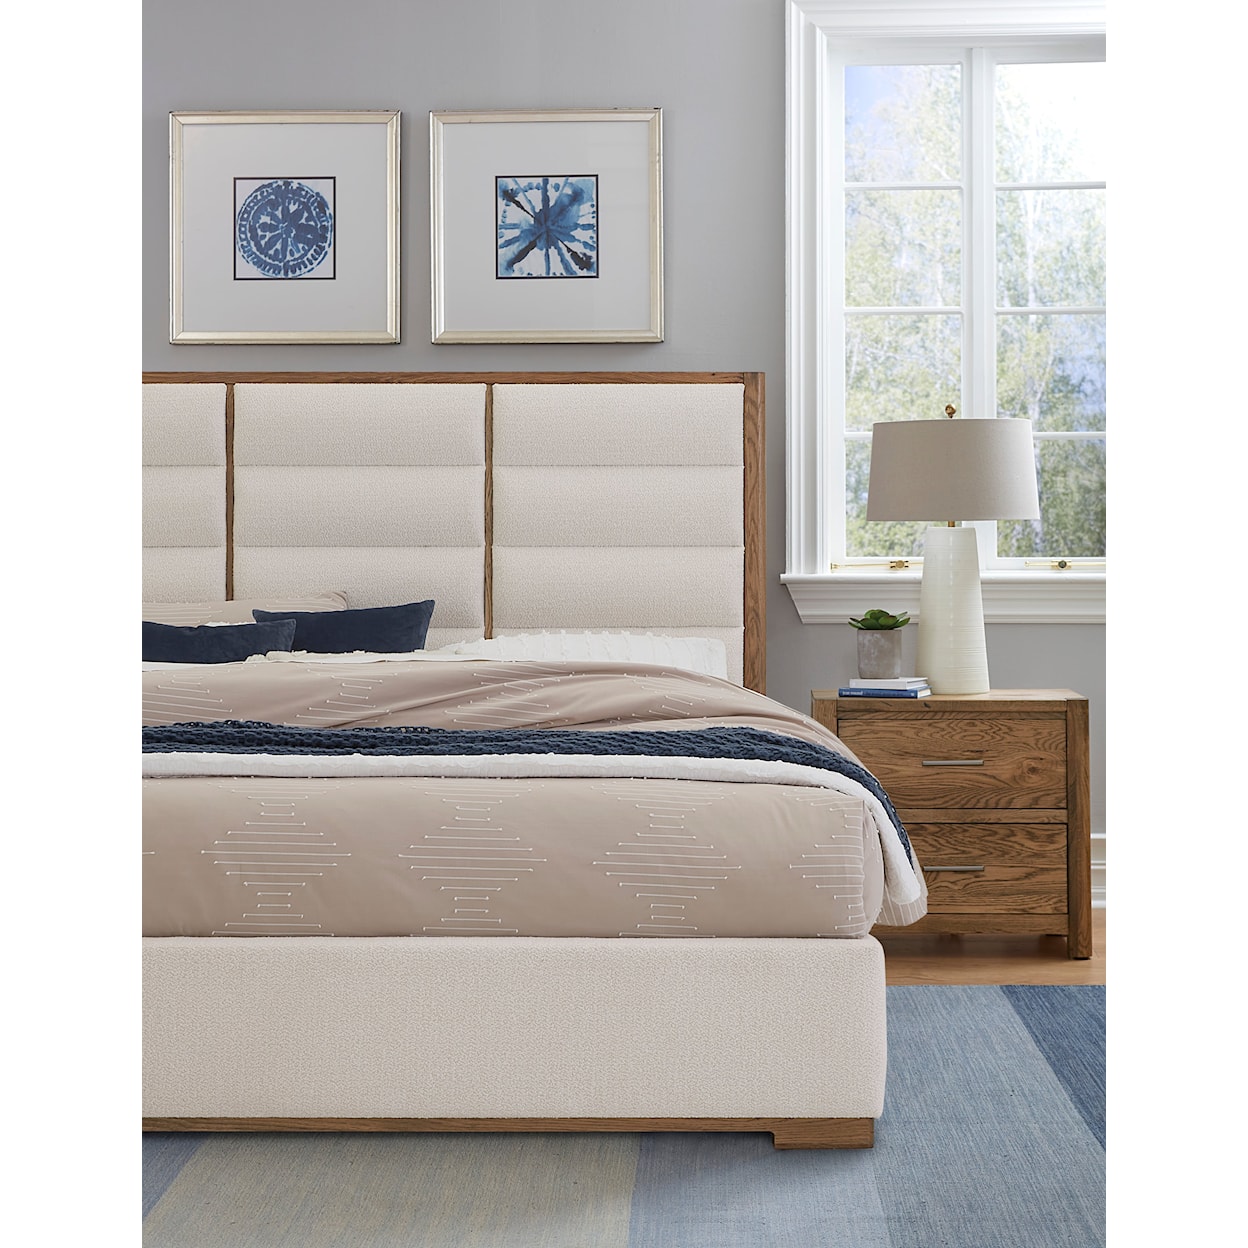 Vaughan-Bassett Charter Oak King Upholstered Bed